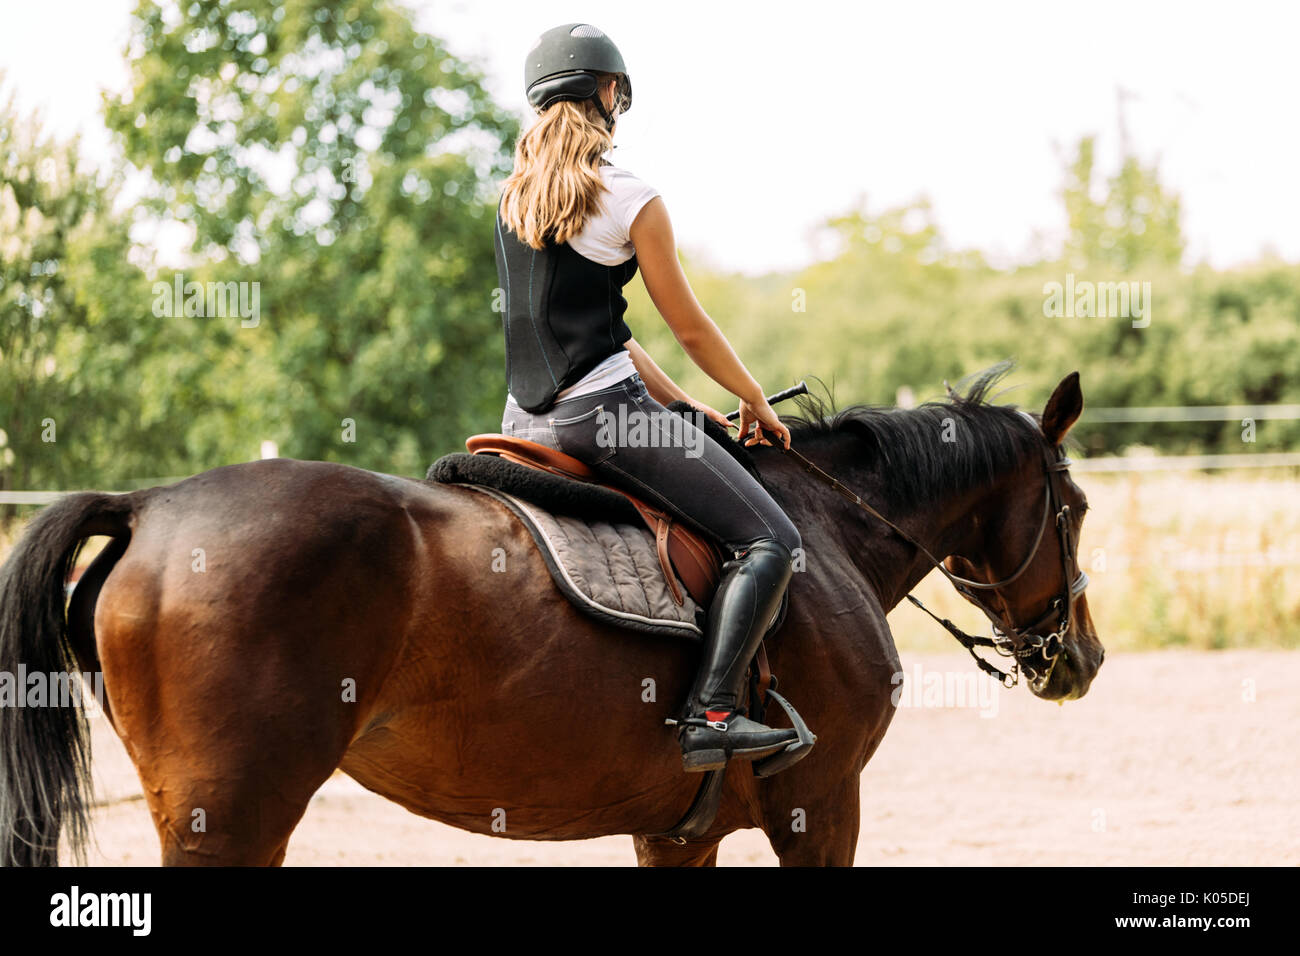 Bild von jungen Mädchen reiten ihr Pferd Stockfoto